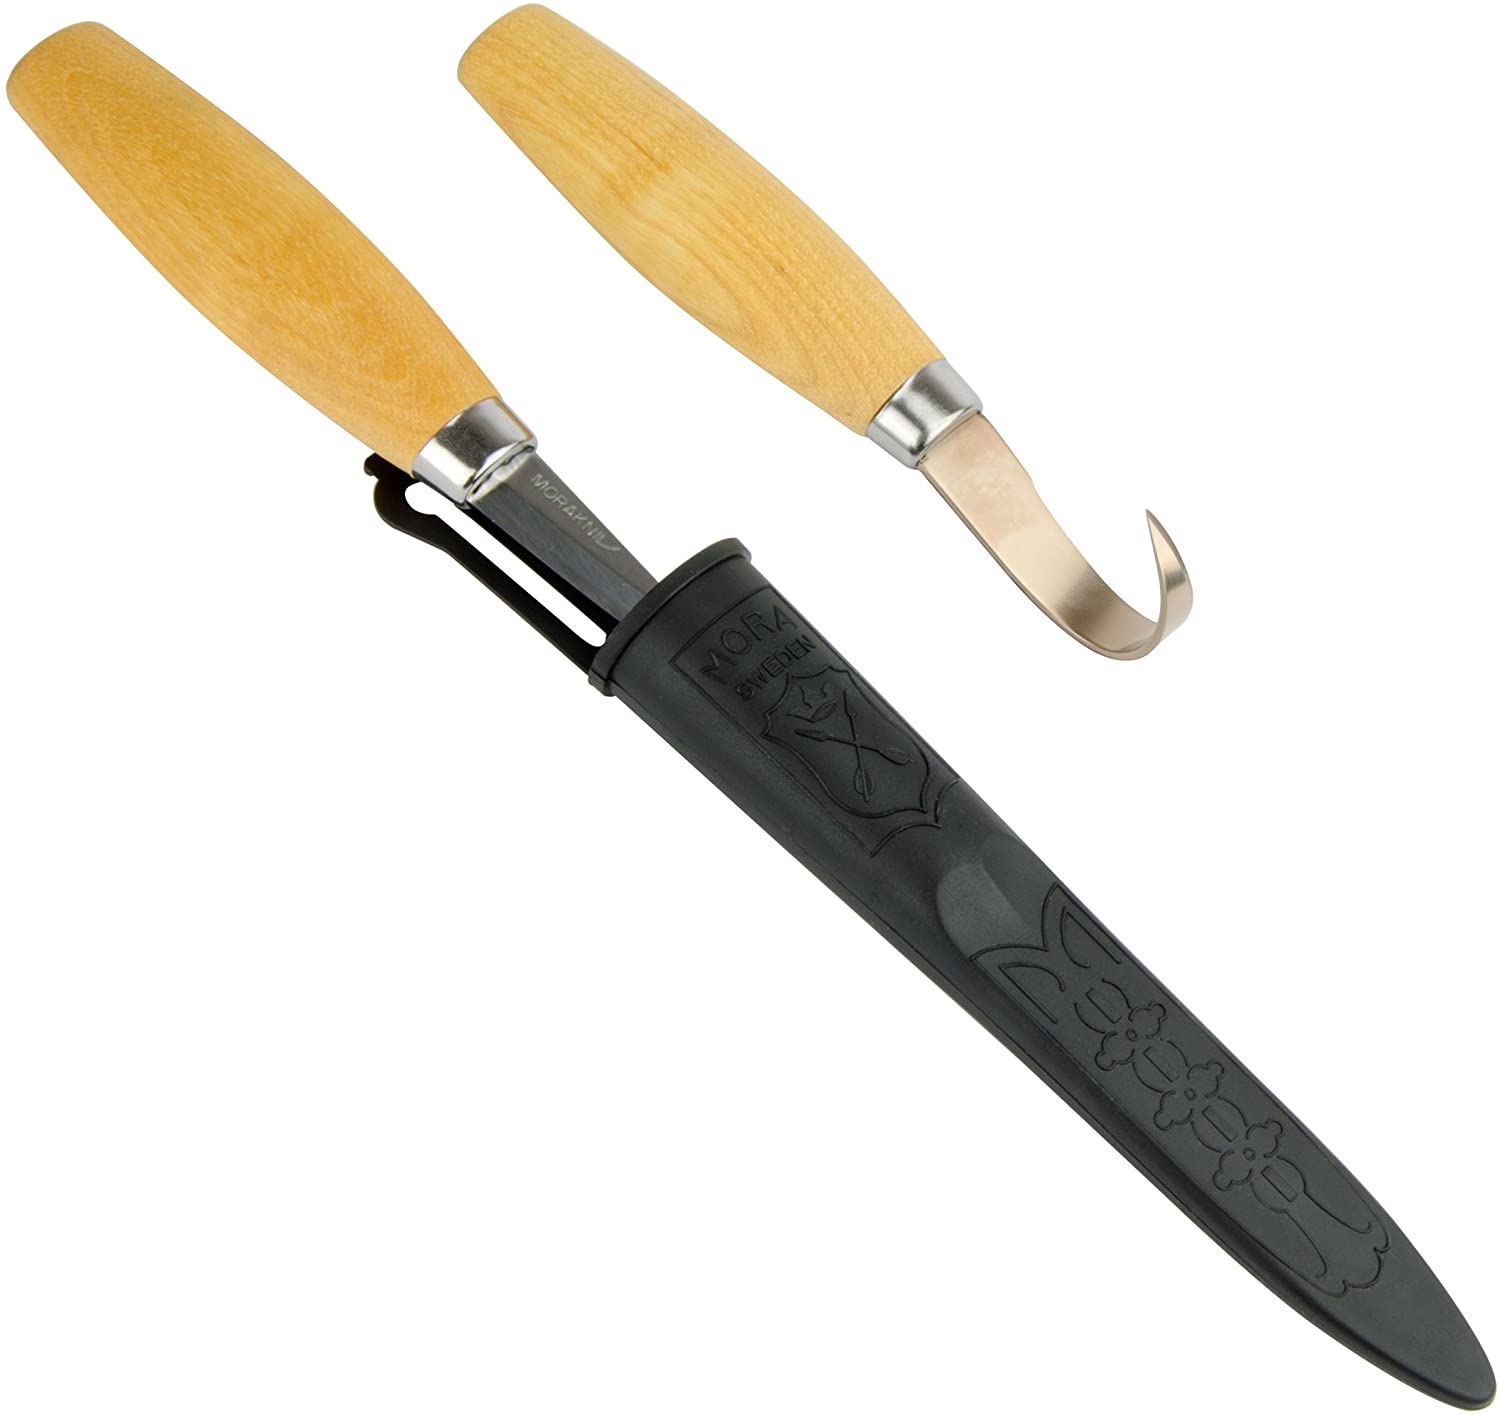 Morakniv Woodworking Knife Set